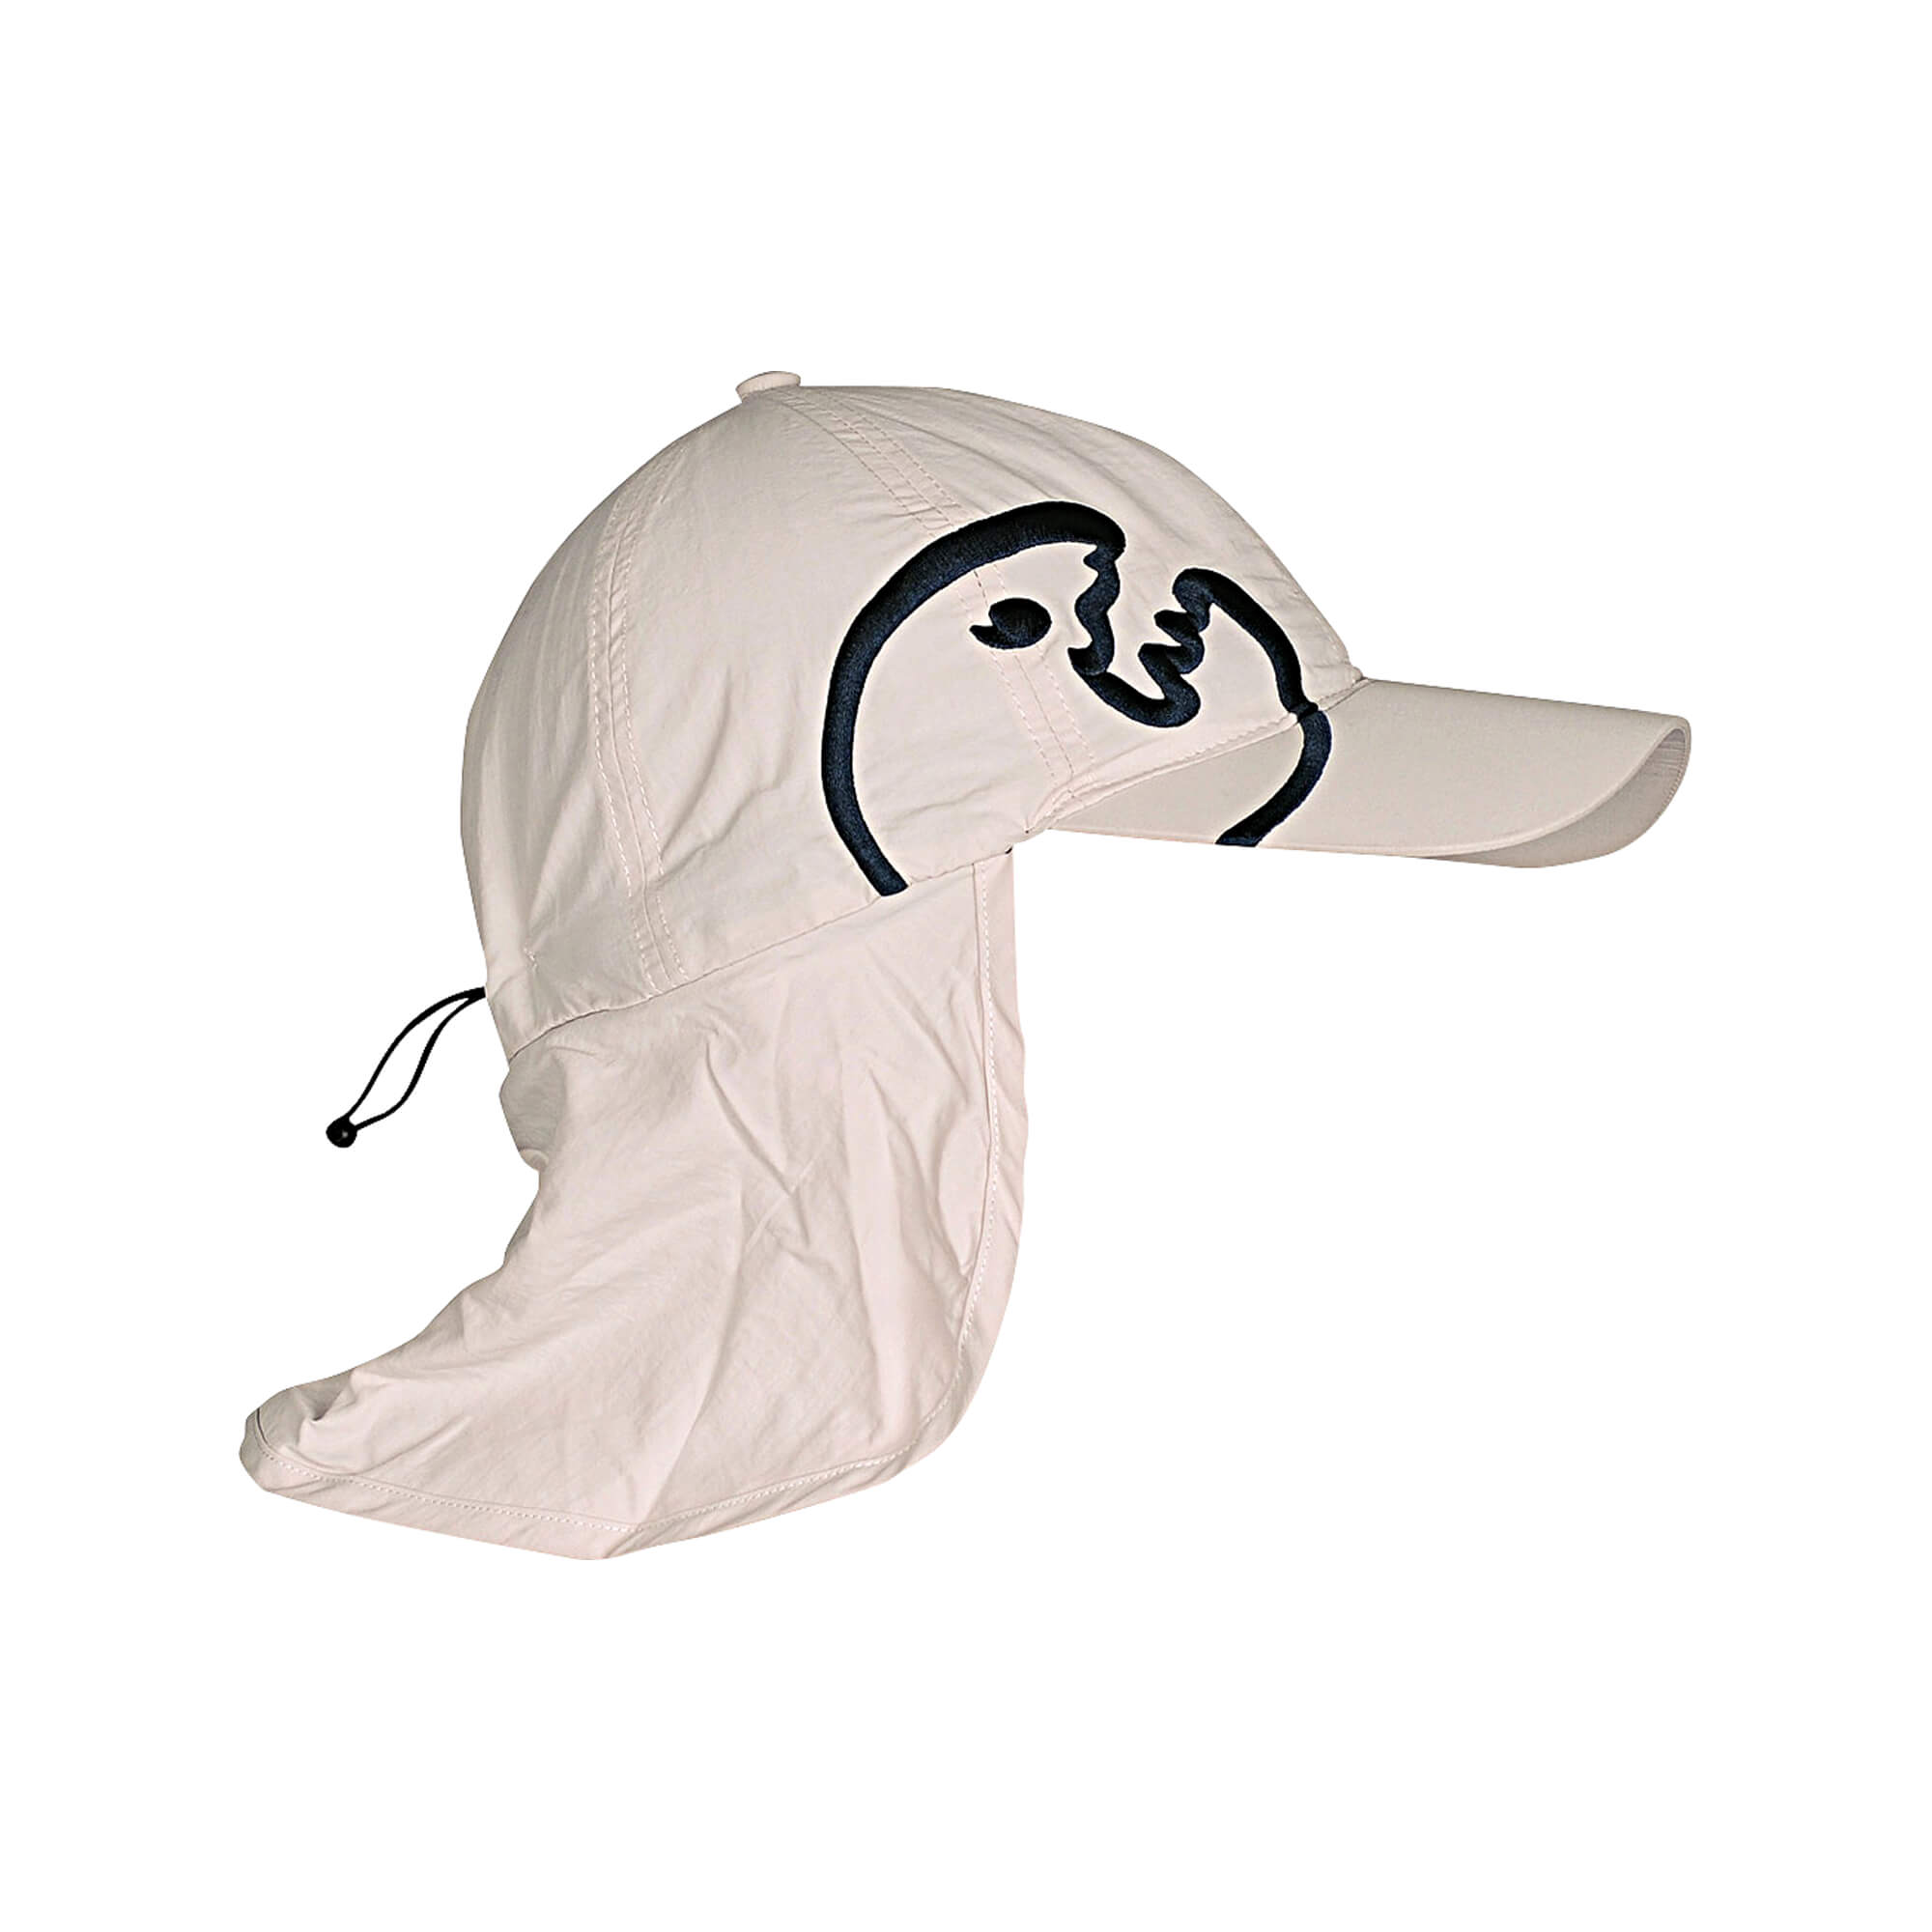 Kappe mit Nackenschutz für Kinder mit UV-Schutz 200+.